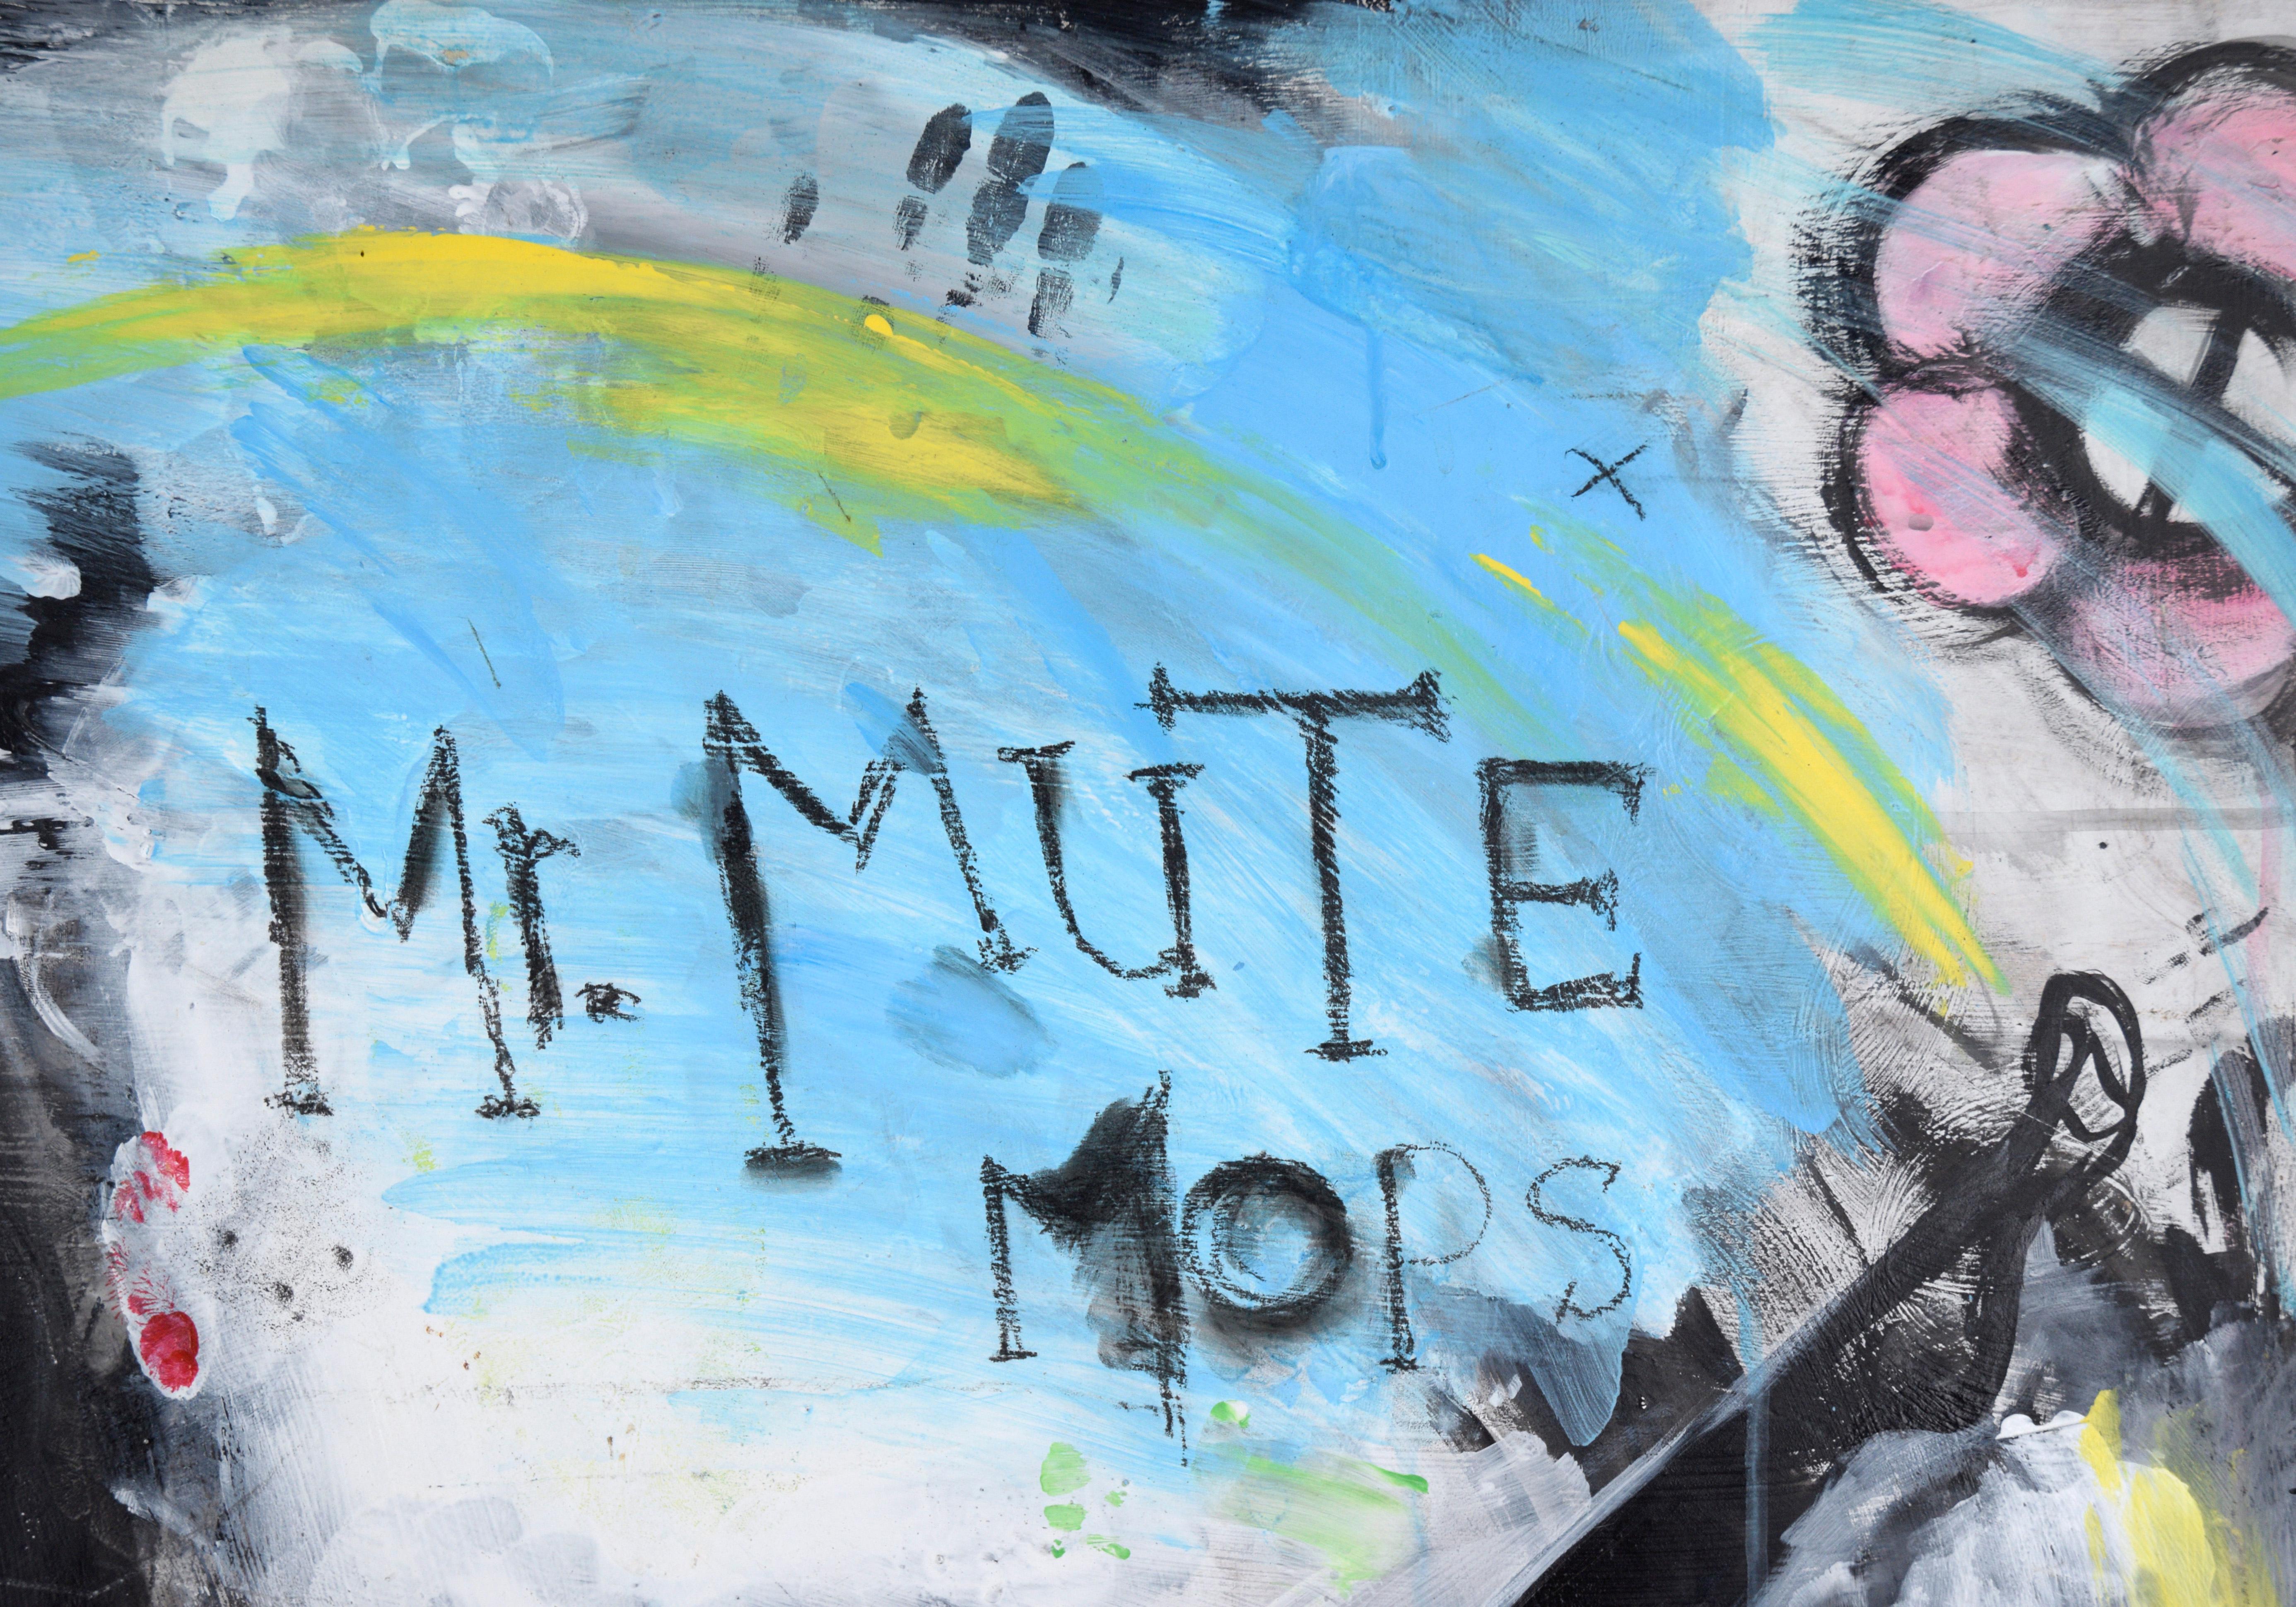 „Mr. Mute Mops Mouths Silent“ - Skurrile figurative Figurative Skurrile in Acryl auf Masonit

Helle figurative Komposition mit einem Pantomimen von Frances Mann (Amerikanerin, 20. Jahrhundert). Die Figur in diesem Stück hat rote Augen und einen